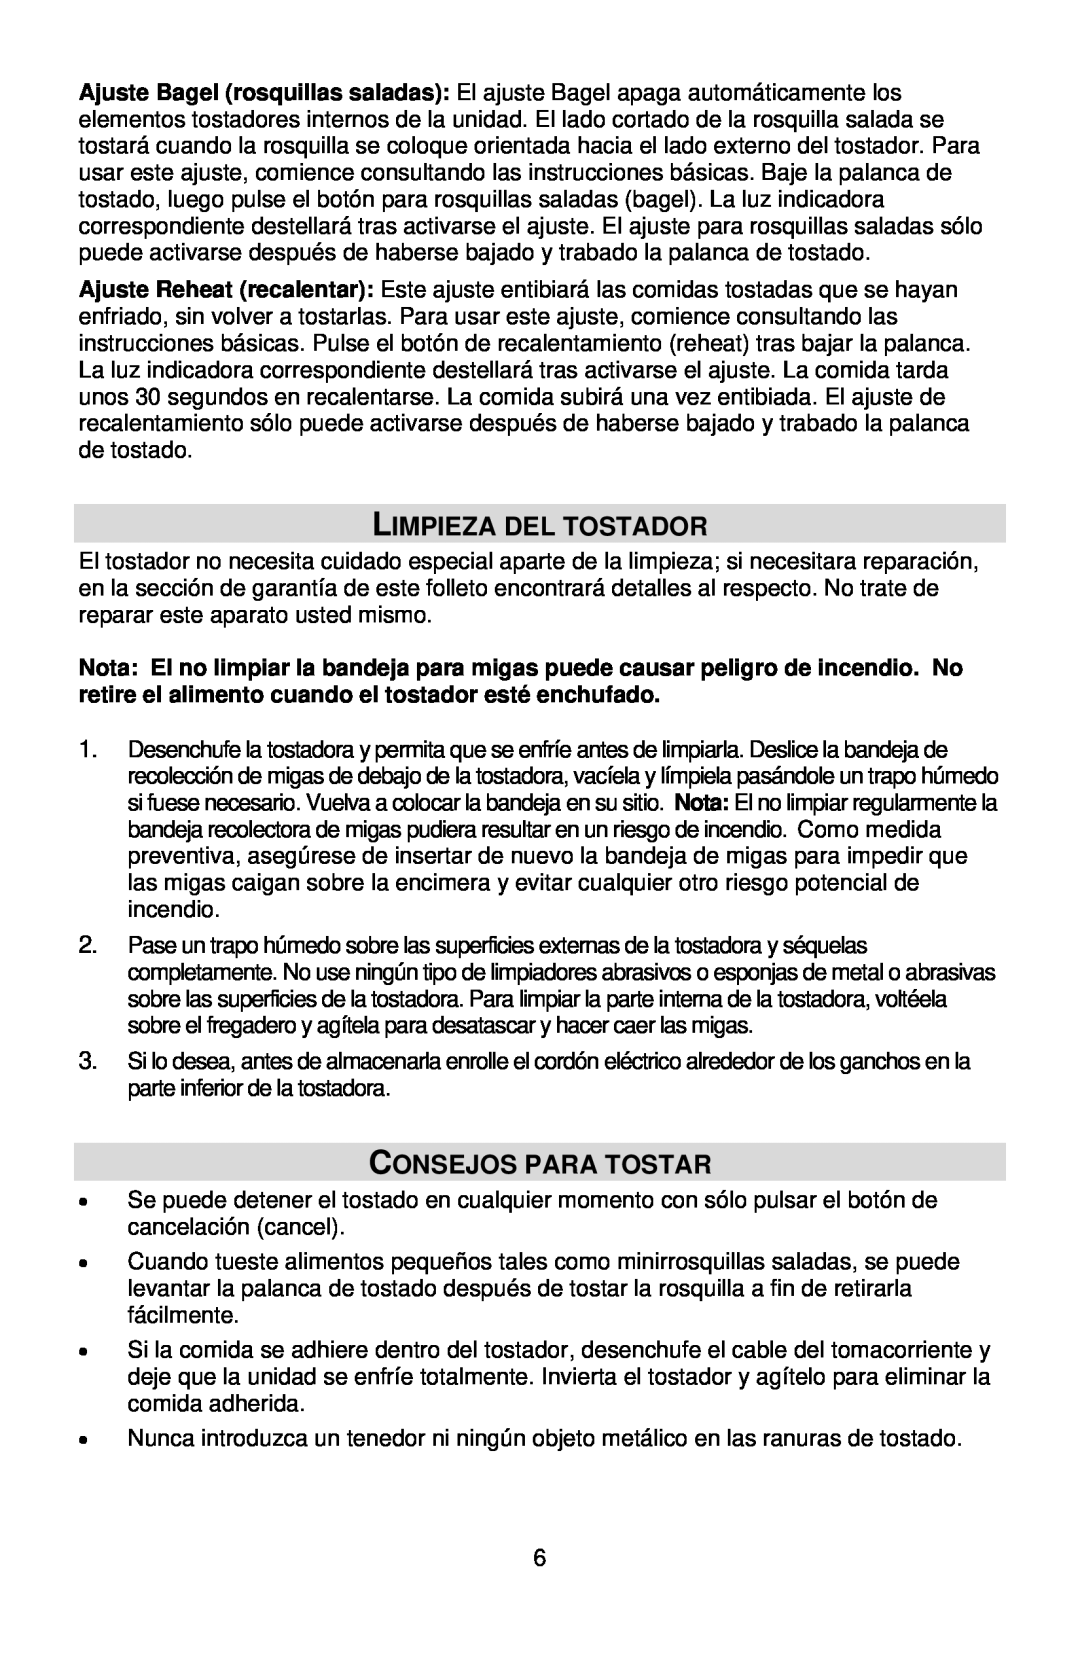 West Bend L5559C instruction manual Limpieza Del Tostador, Consejos Para Tostar 